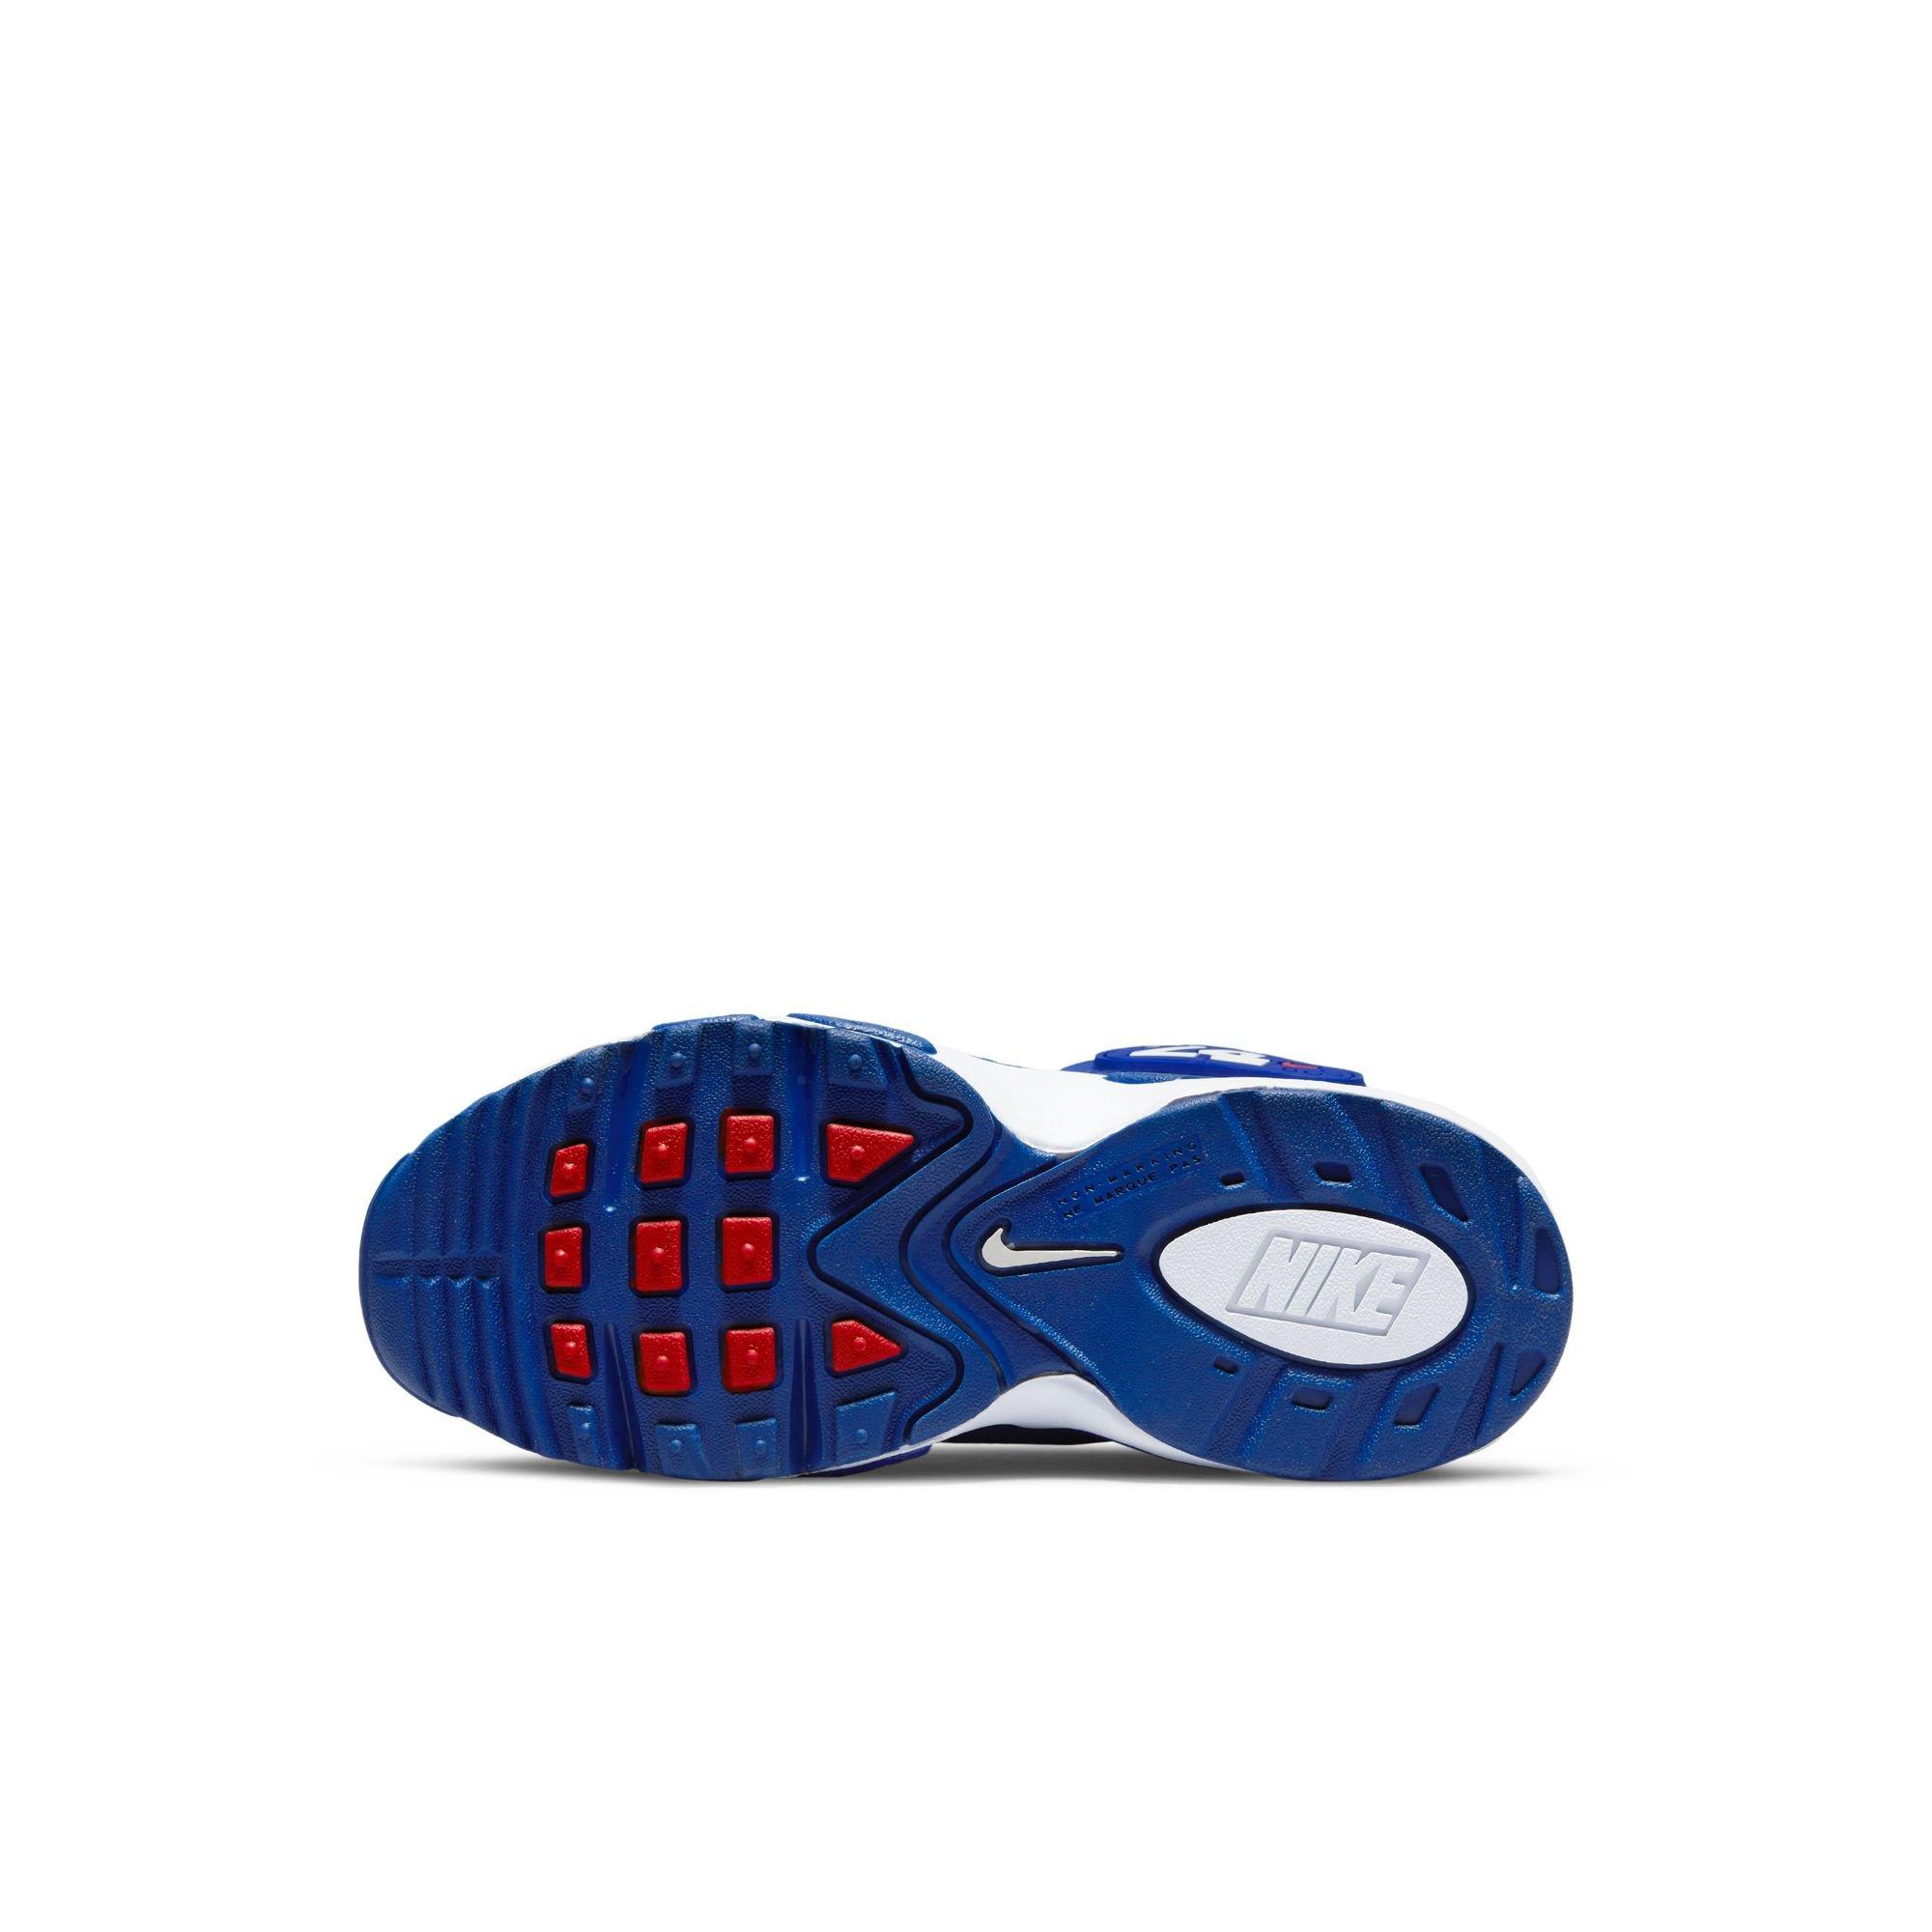 Nike Air Griffey Max 1 Black/Fresh Water/White Toddler Kids' Shoe -  Hibbett